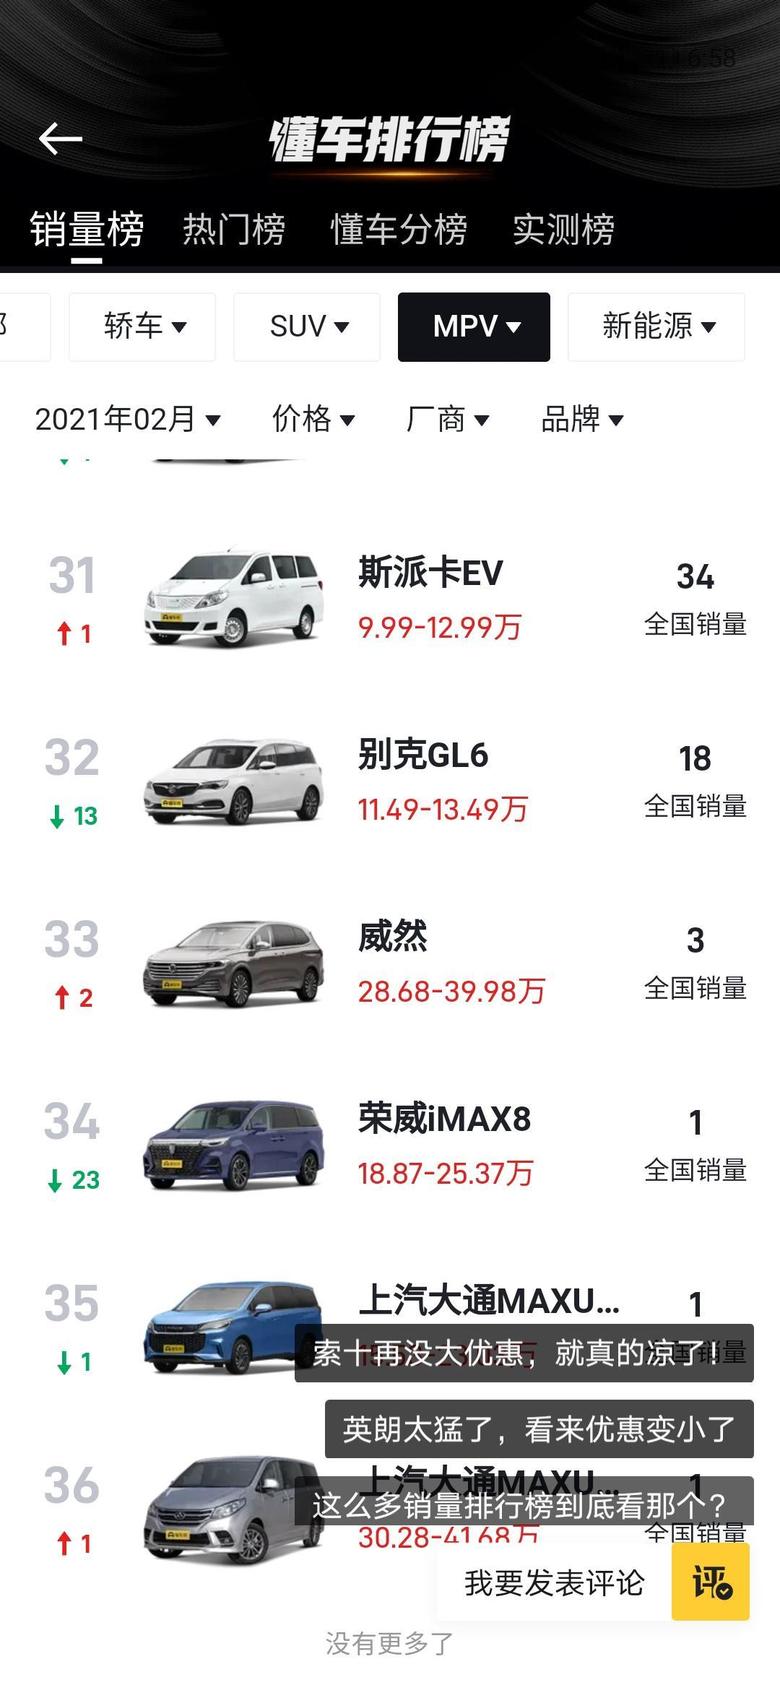 荣威imax8为什么这款车2月份销量才一辆